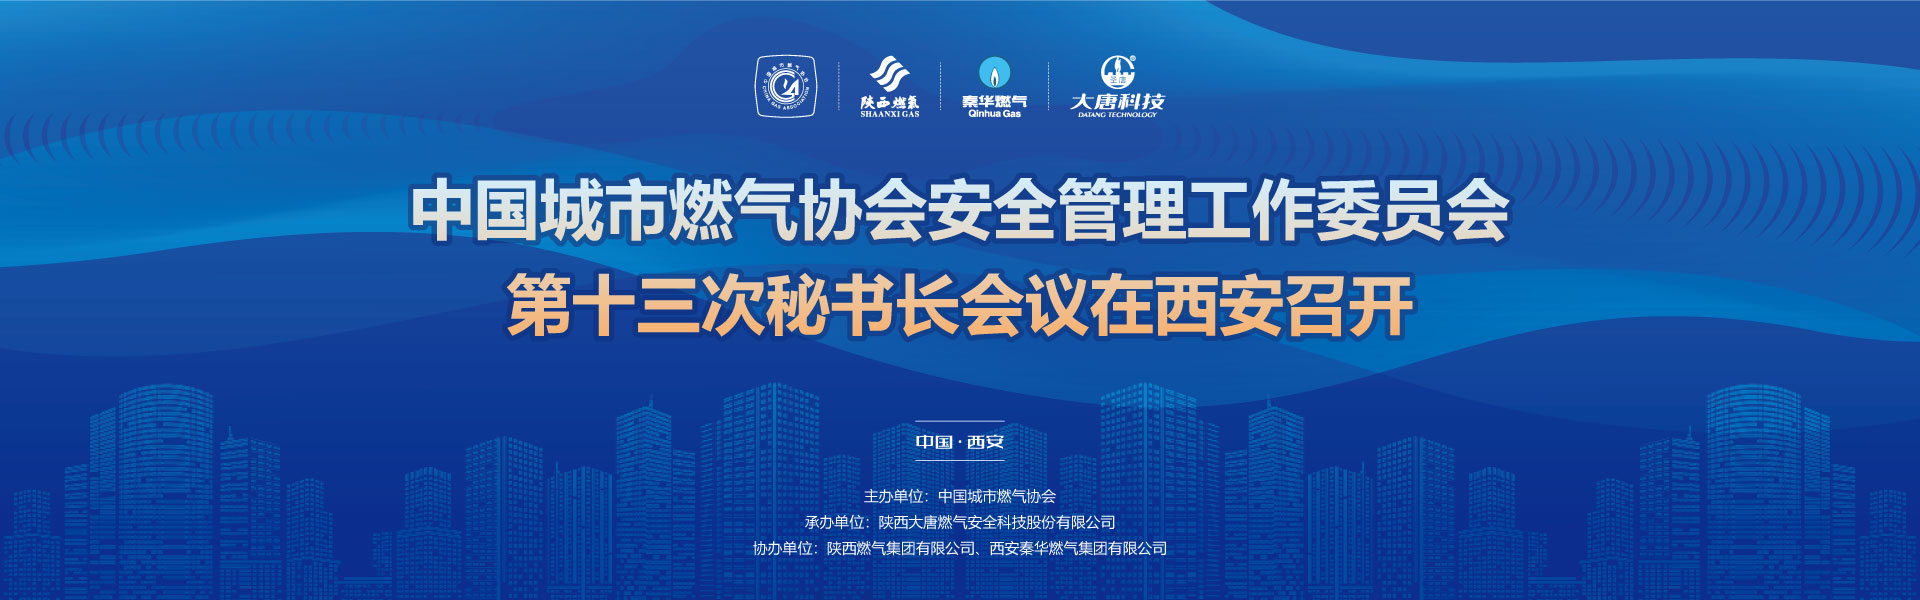 中国城市燃气协会安全管理工作委员会第十三次秘书长会议在西安召开